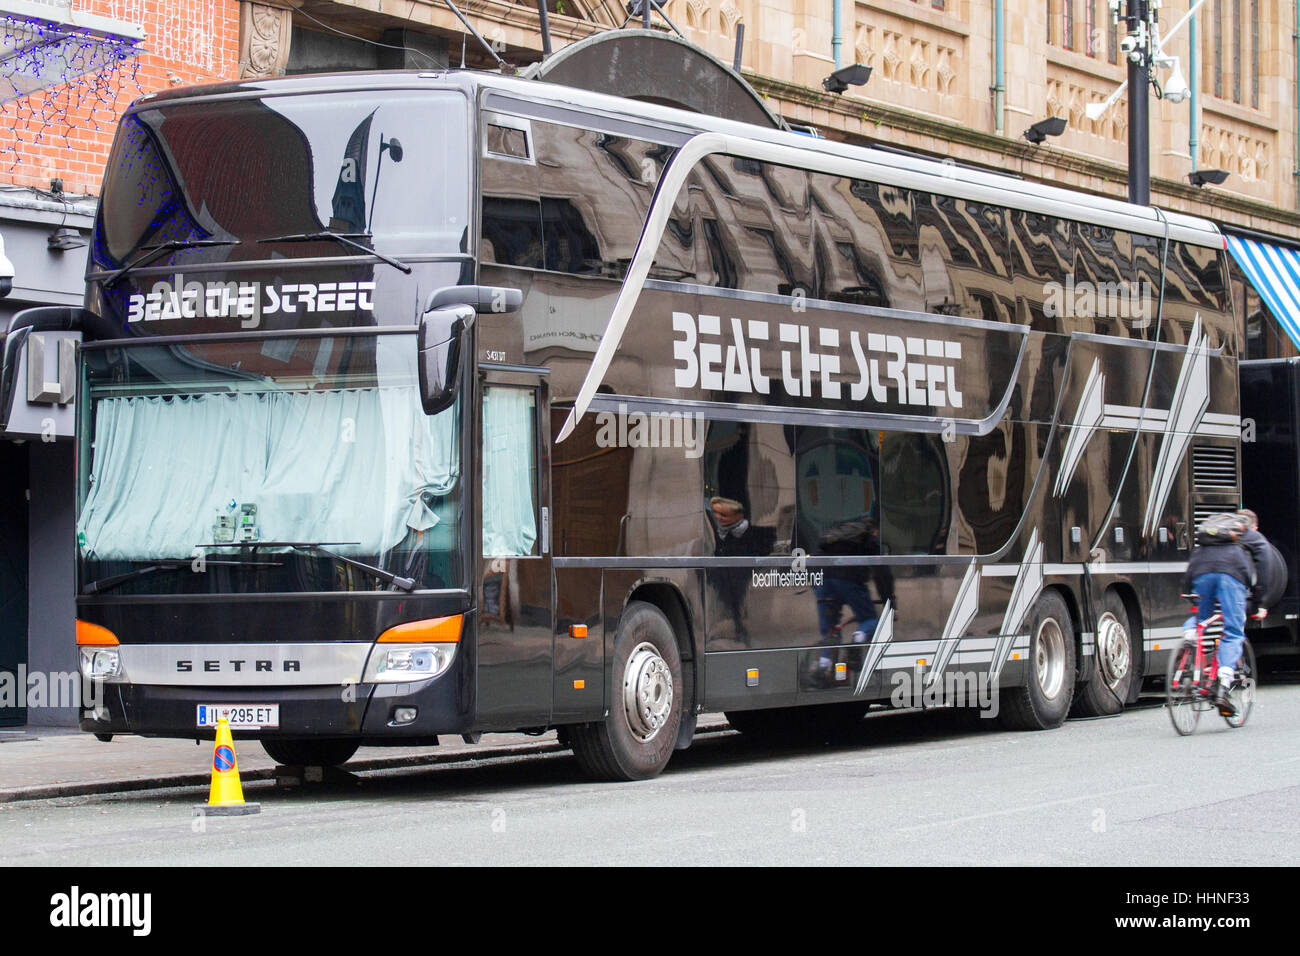 Beat the Street“-Künstler und Crew-Transport Setra-Bus, geparkt in  Manchester, Großbritannien Stockfotografie - Alamy